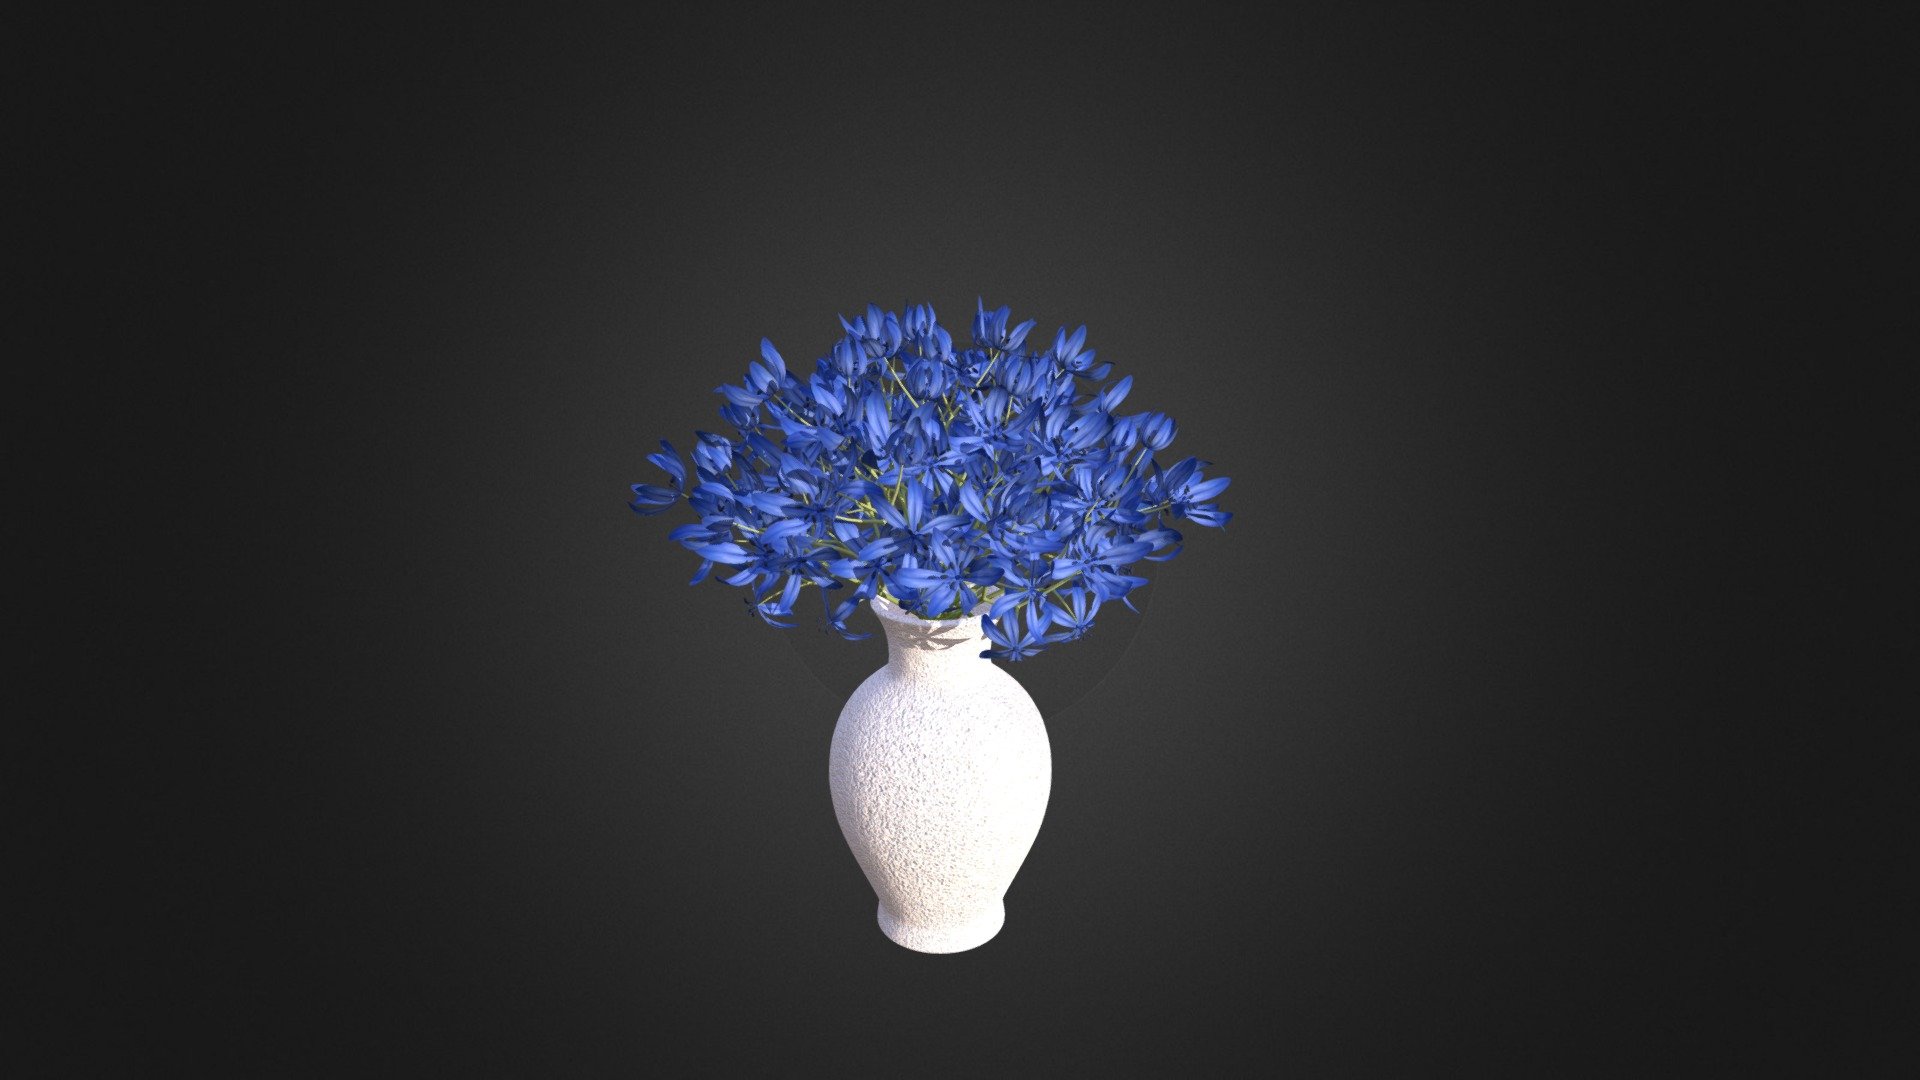 Blue Flowers in White Vase